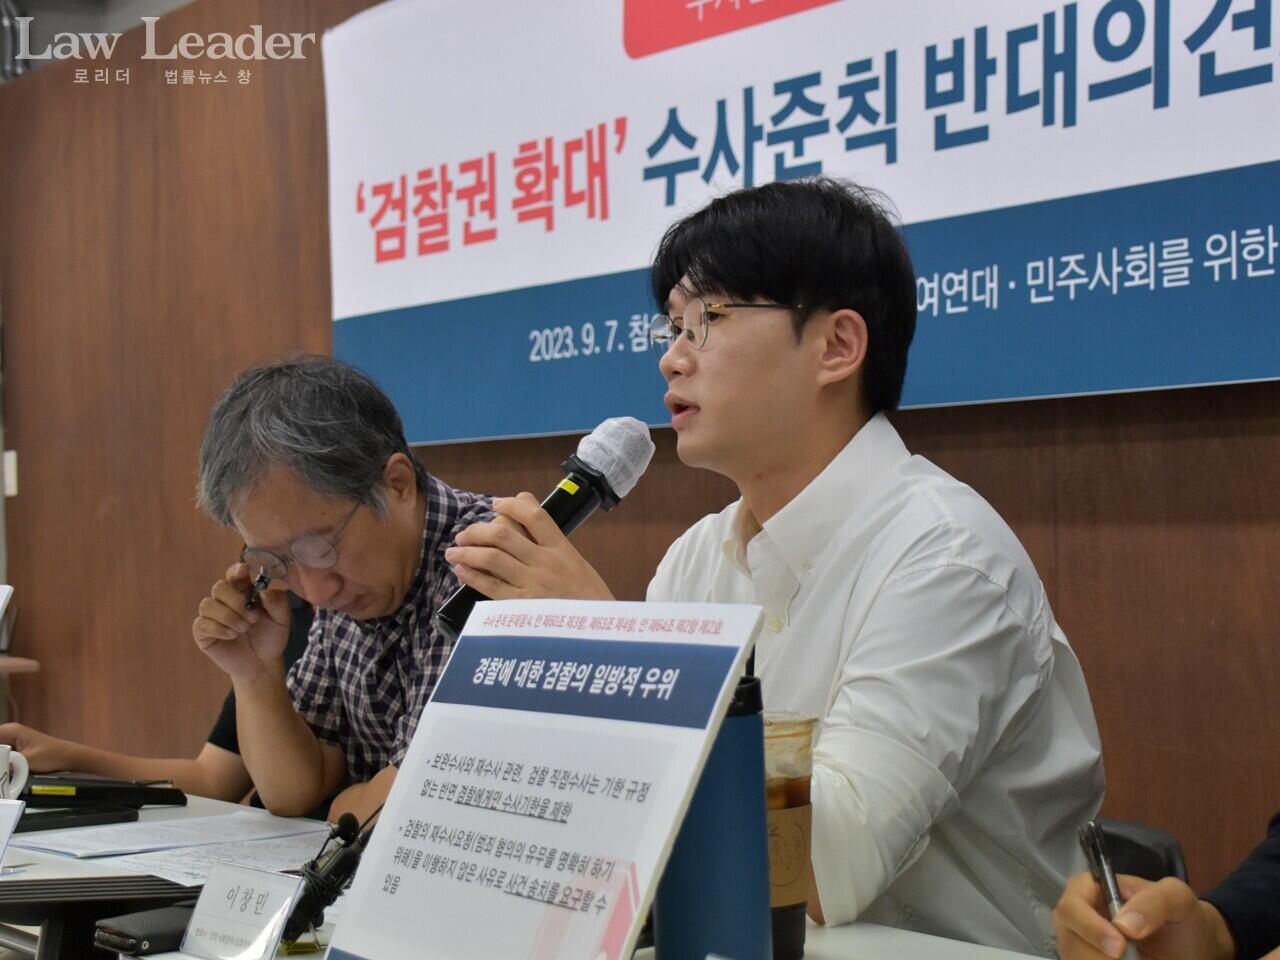 참여연대 한상희 공동대표(左), 민변 사법센터 이창민 변호사(右)